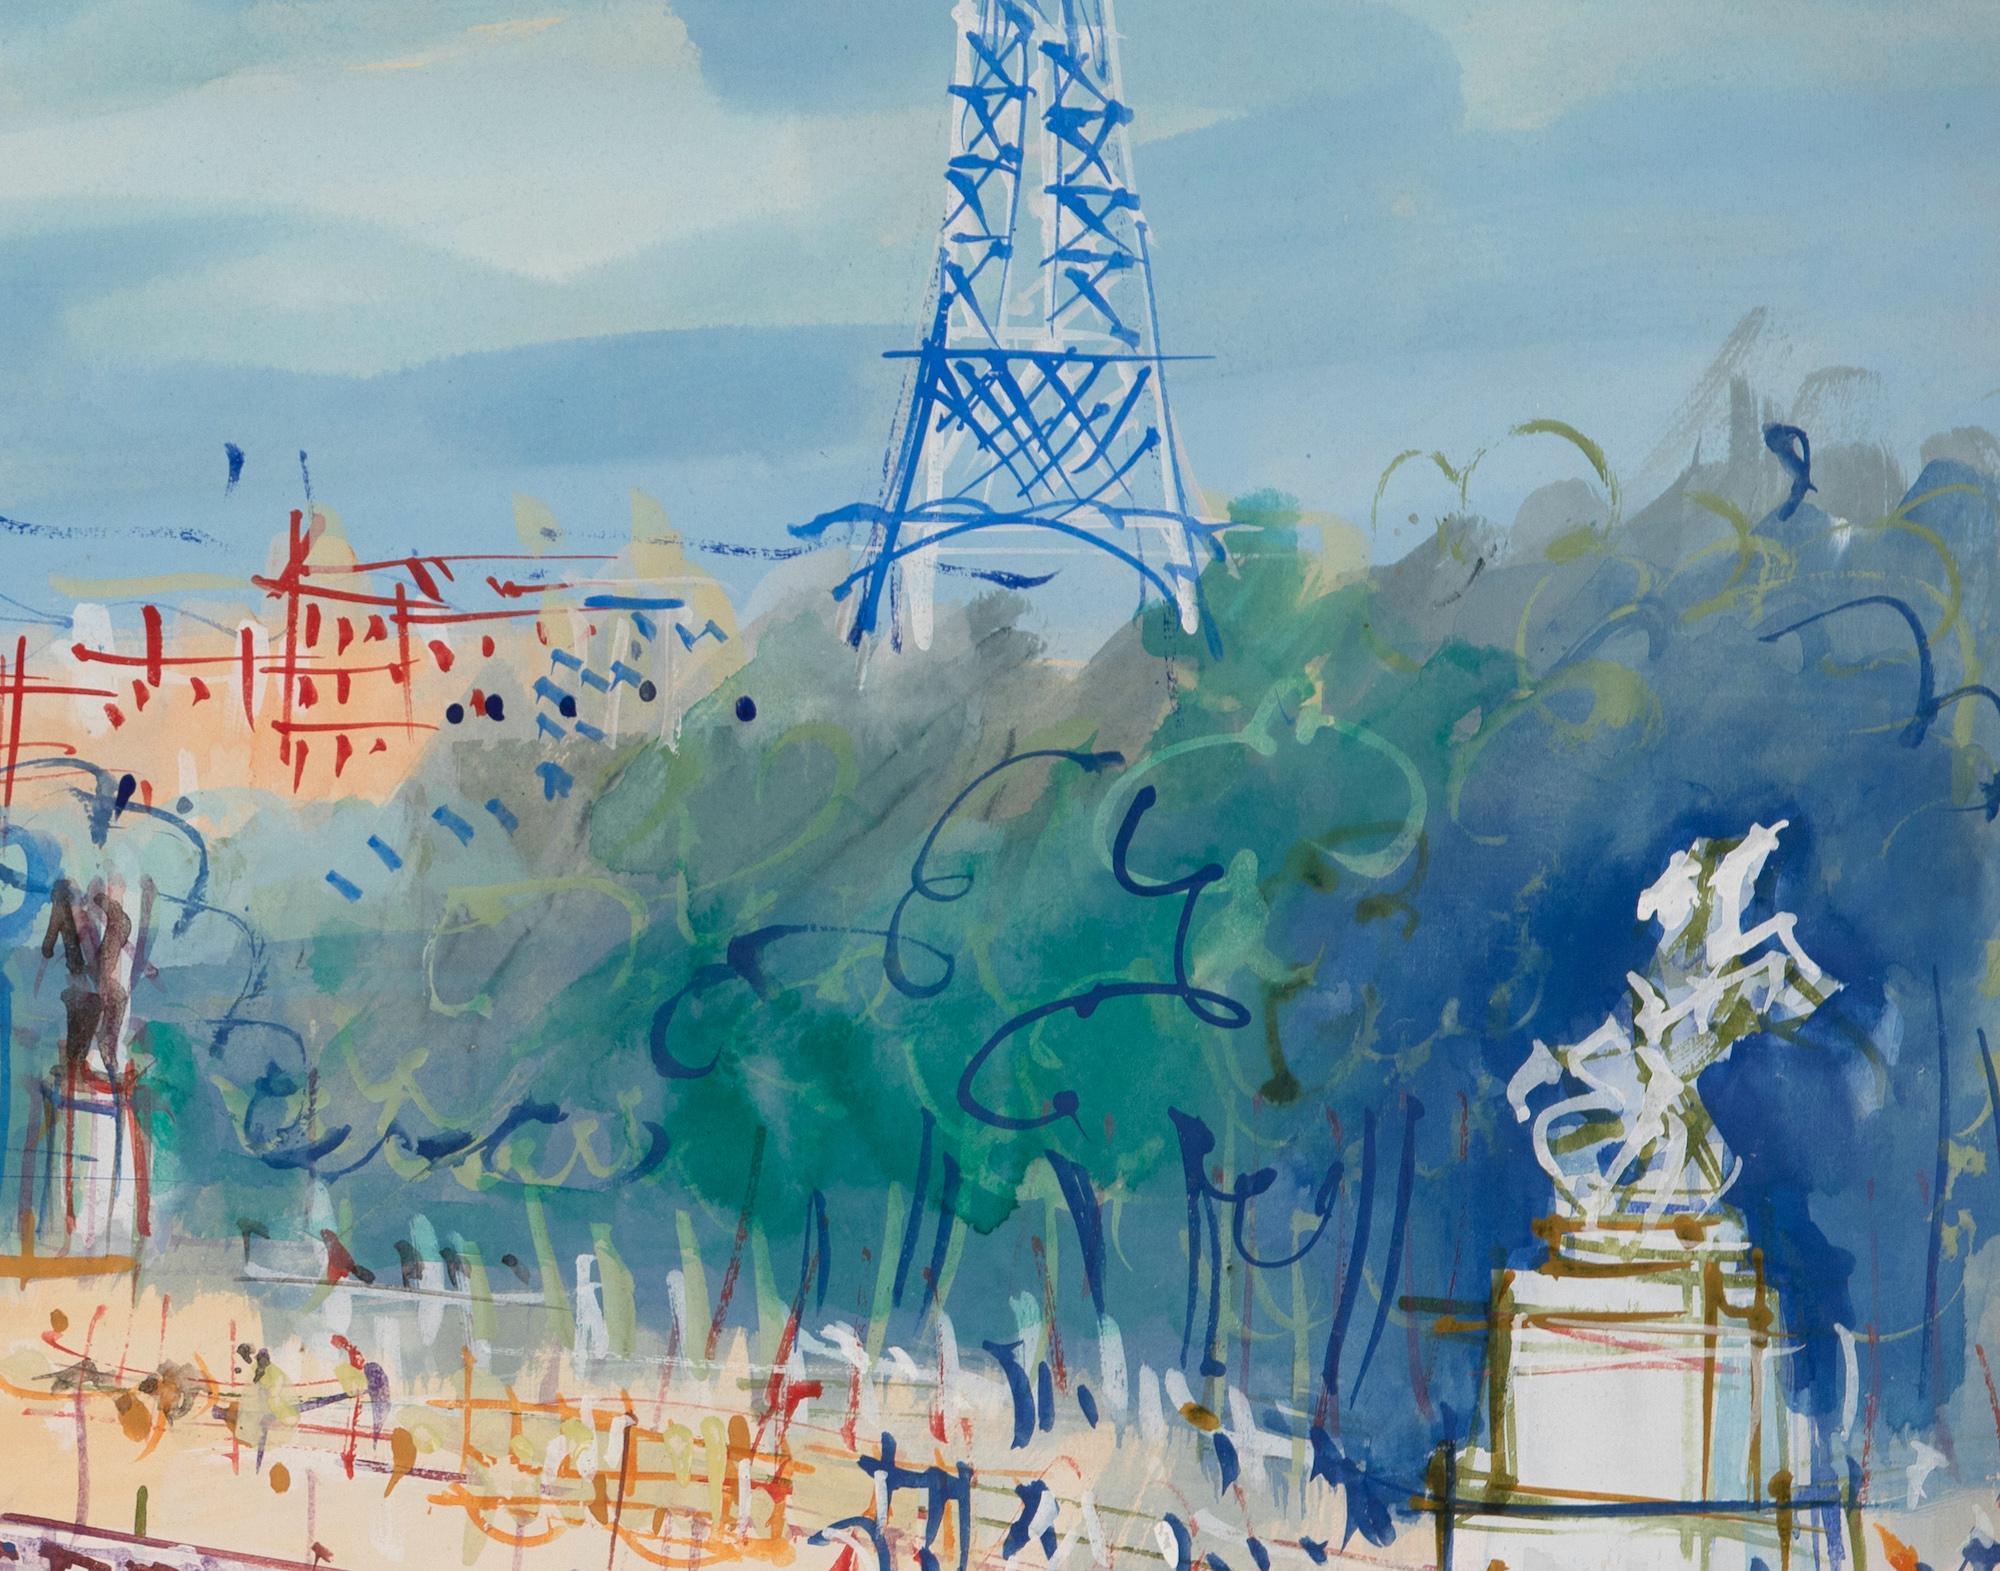 Place de la Concorde by Jean Dufy - Mixed media on paper, Parisian scene For Sale 1